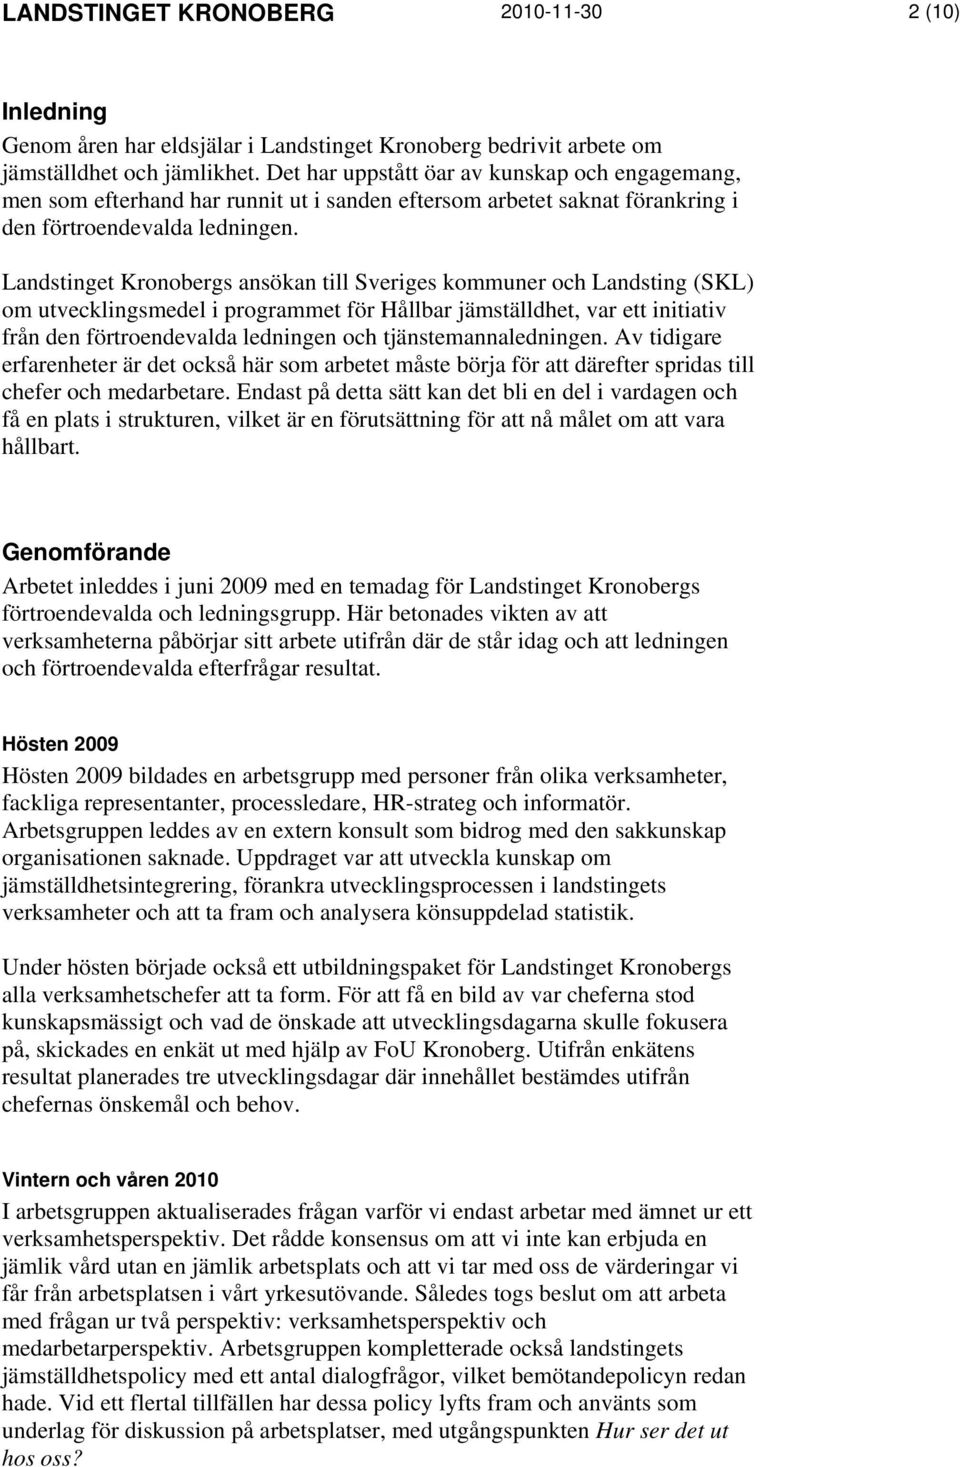 Landstinget Kronobergs ansökan till Sveriges kommuner och Landsting (SKL) om utvecklingsmedel i programmet för Hållbar jämställdhet, var ett initiativ från den förtroendevalda ledningen och